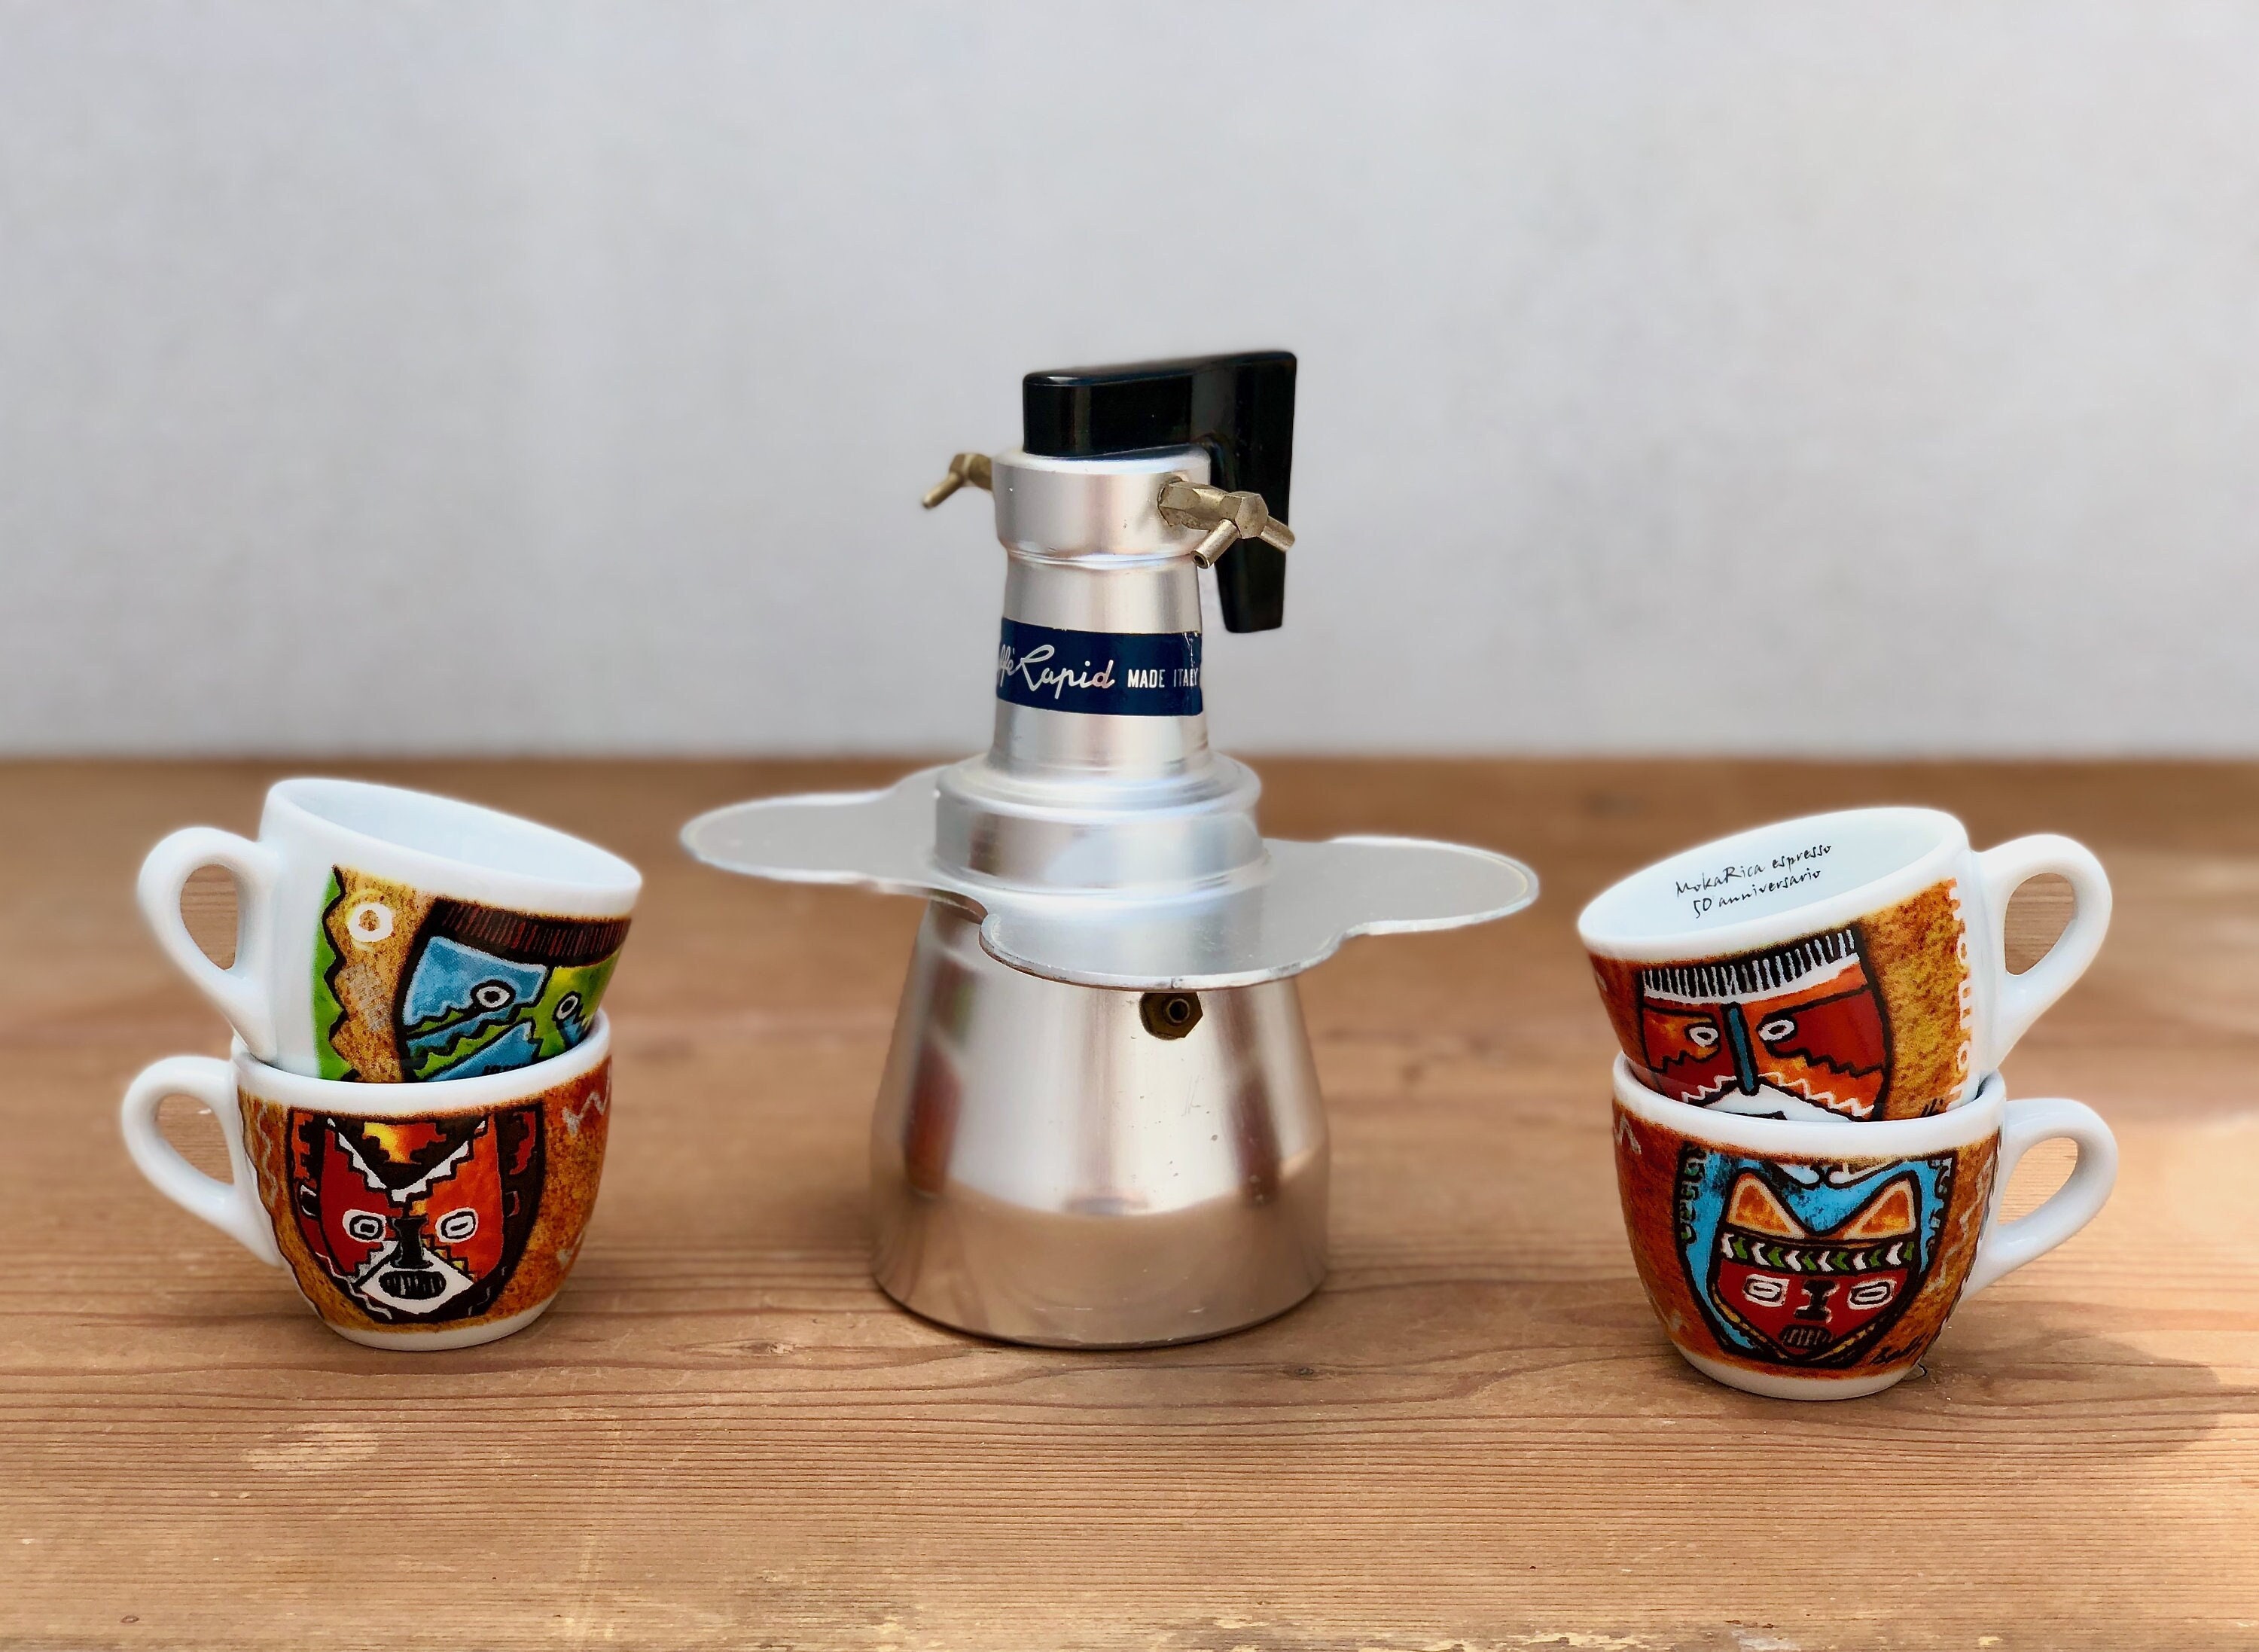 Cafetera 9 Tazas para Estufa Moka Espresso con Percolador Acero Inoxidable  Rojo